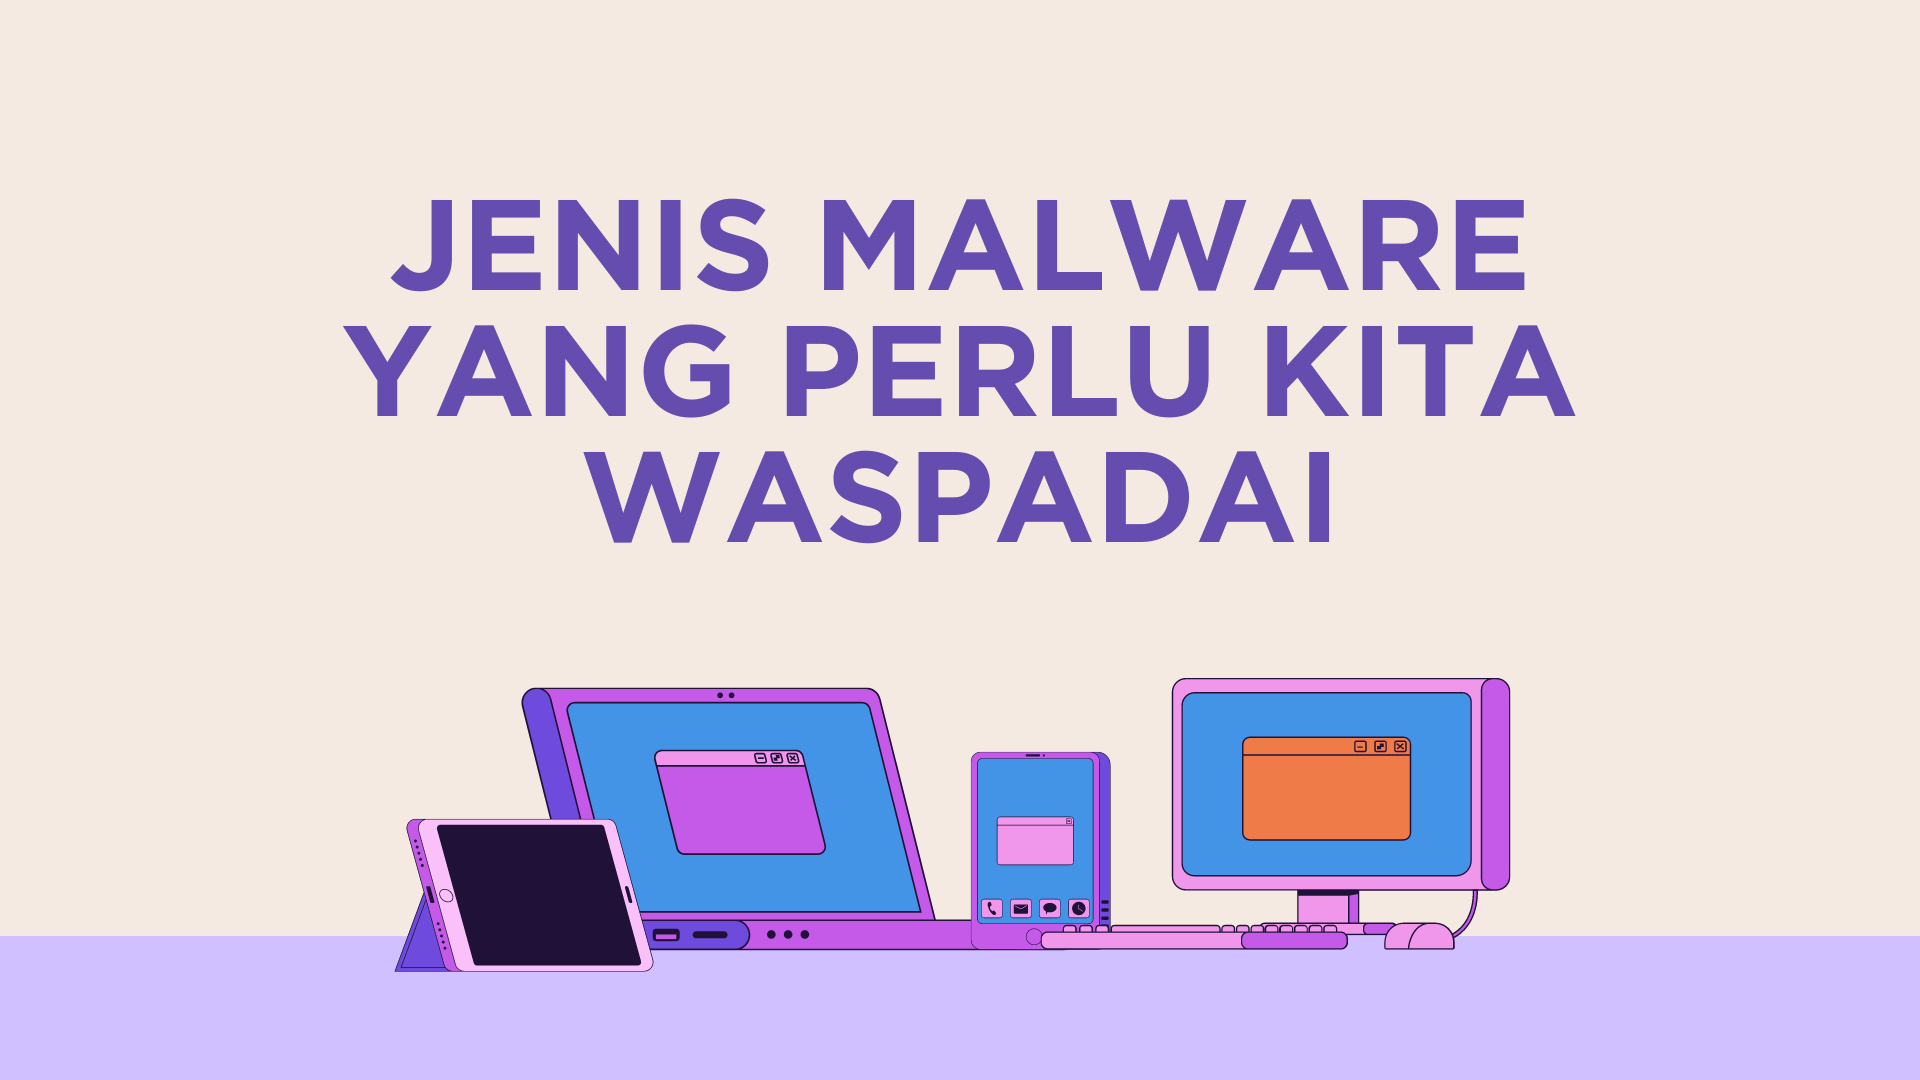 Jenis Malware yang Perlu Kita Waspadai